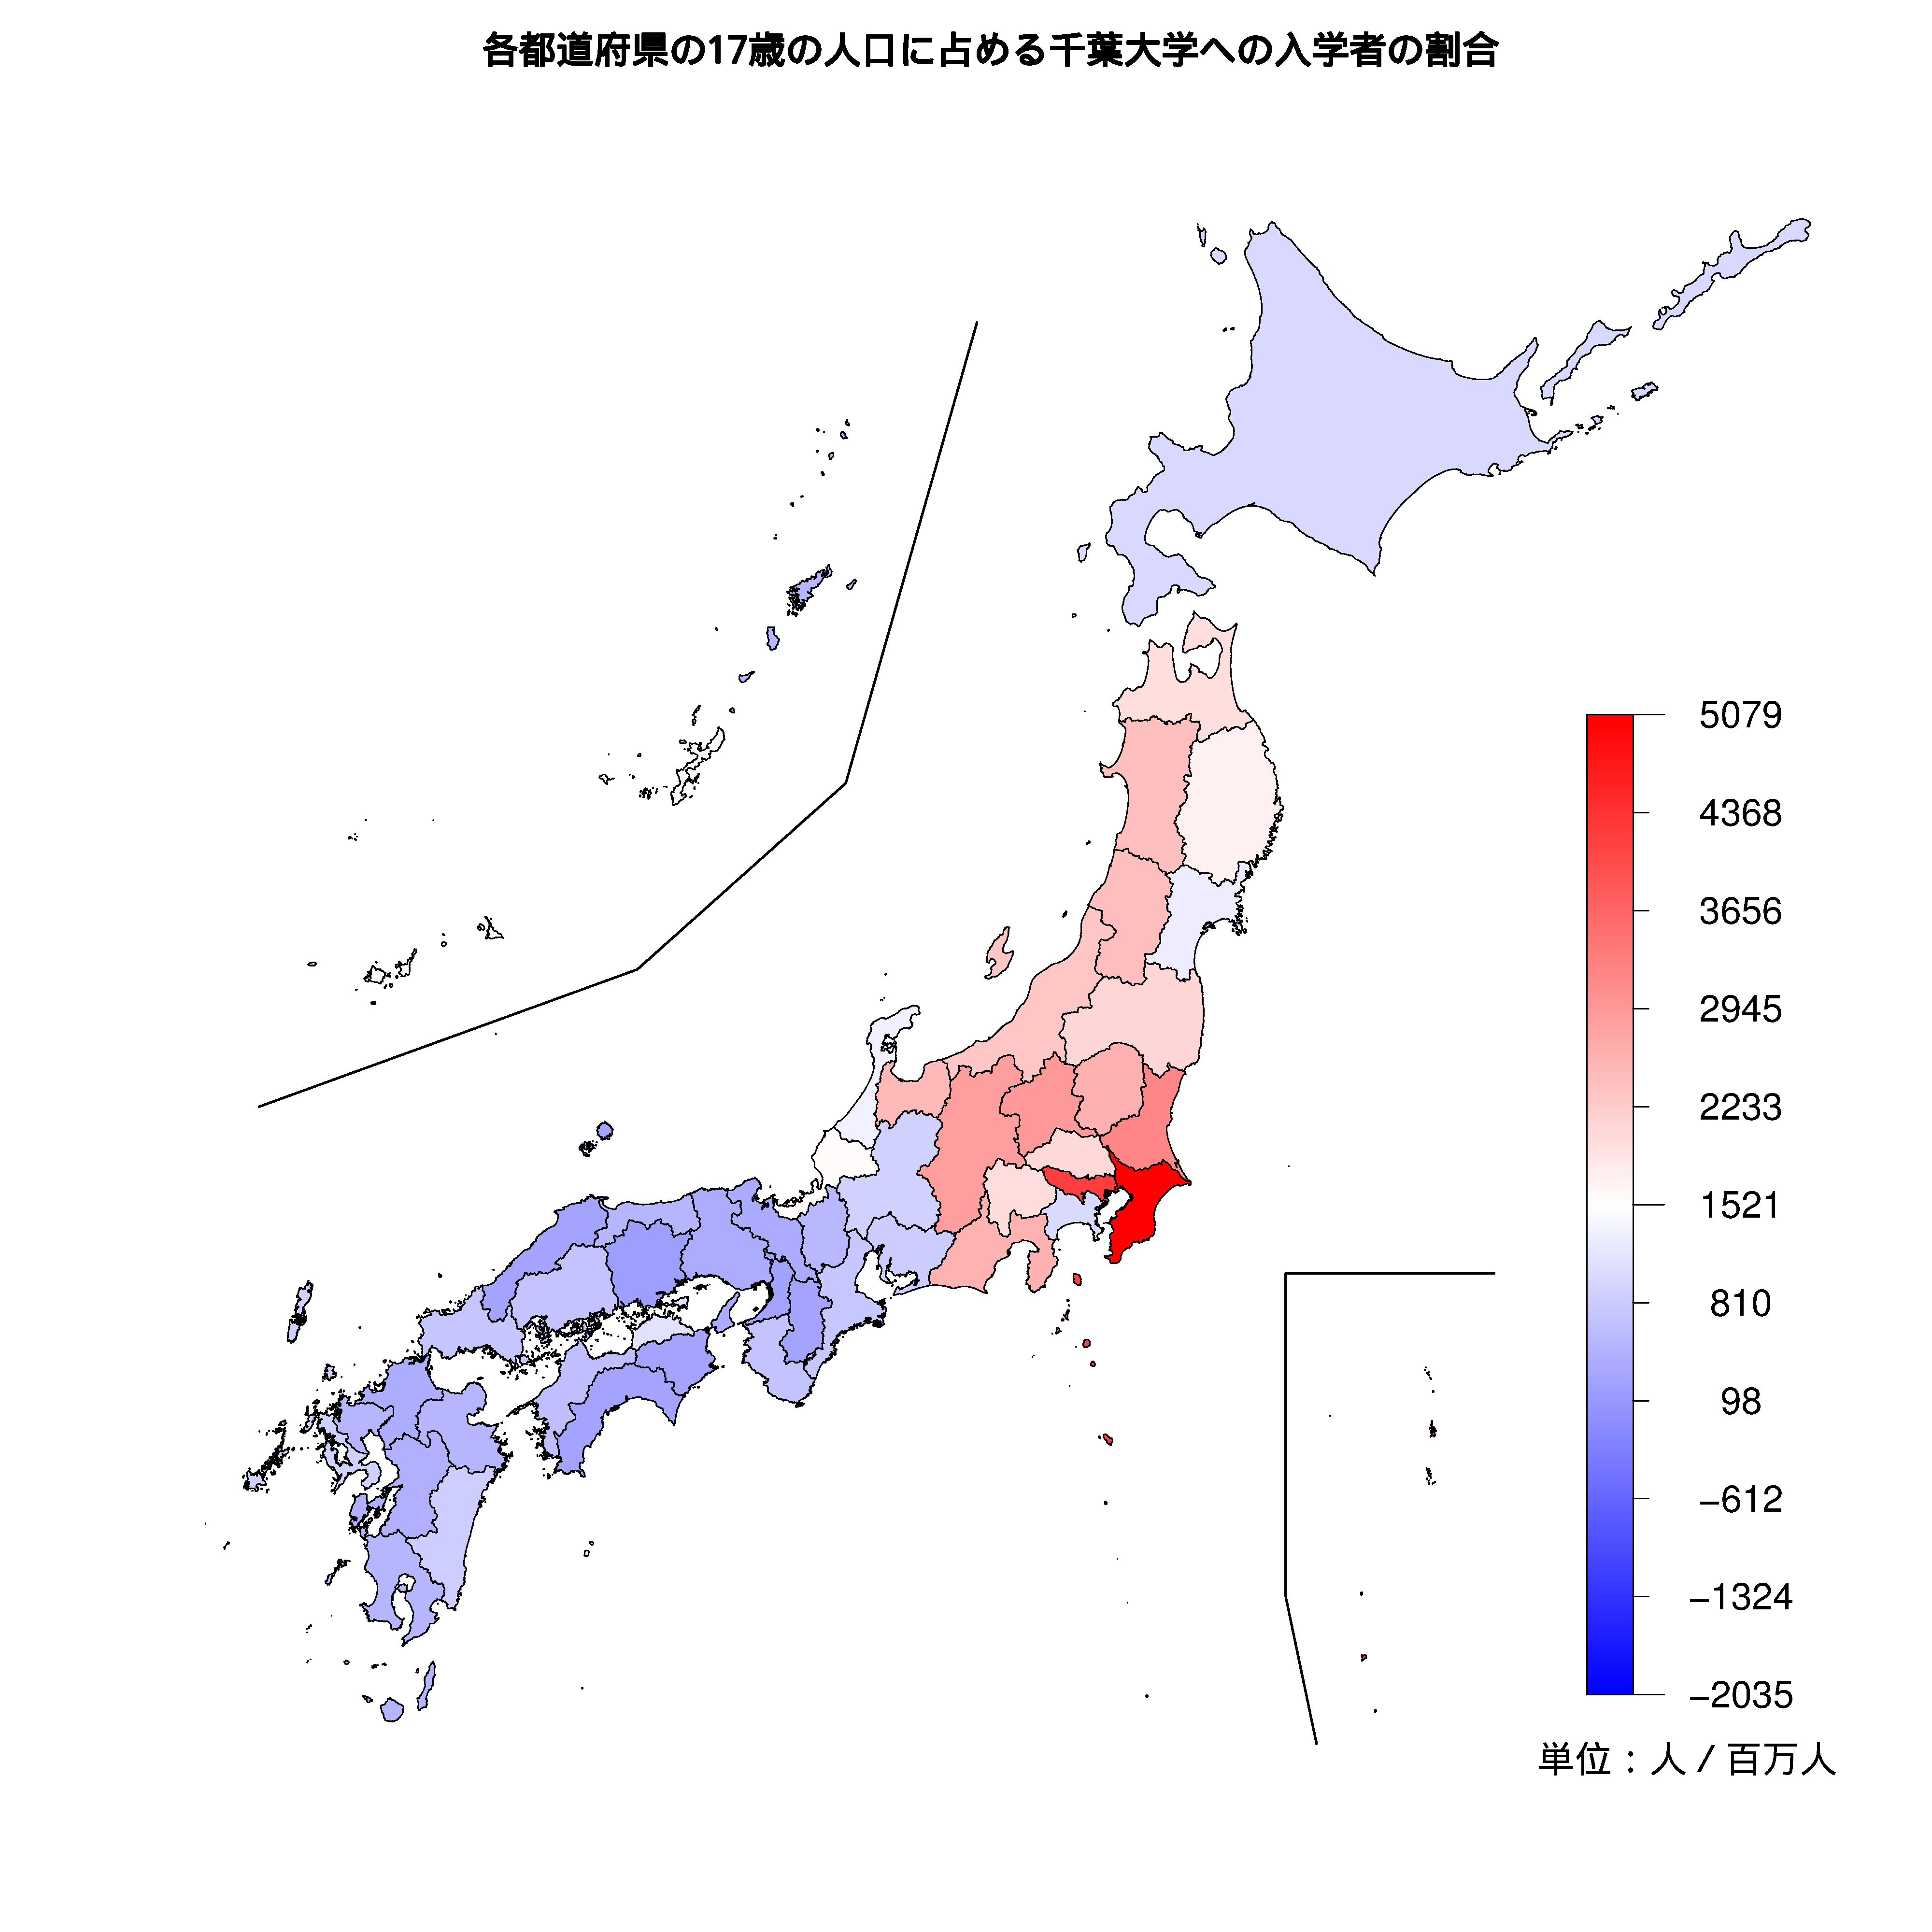 千葉大学への入学者が多い都道府県の色分け地図